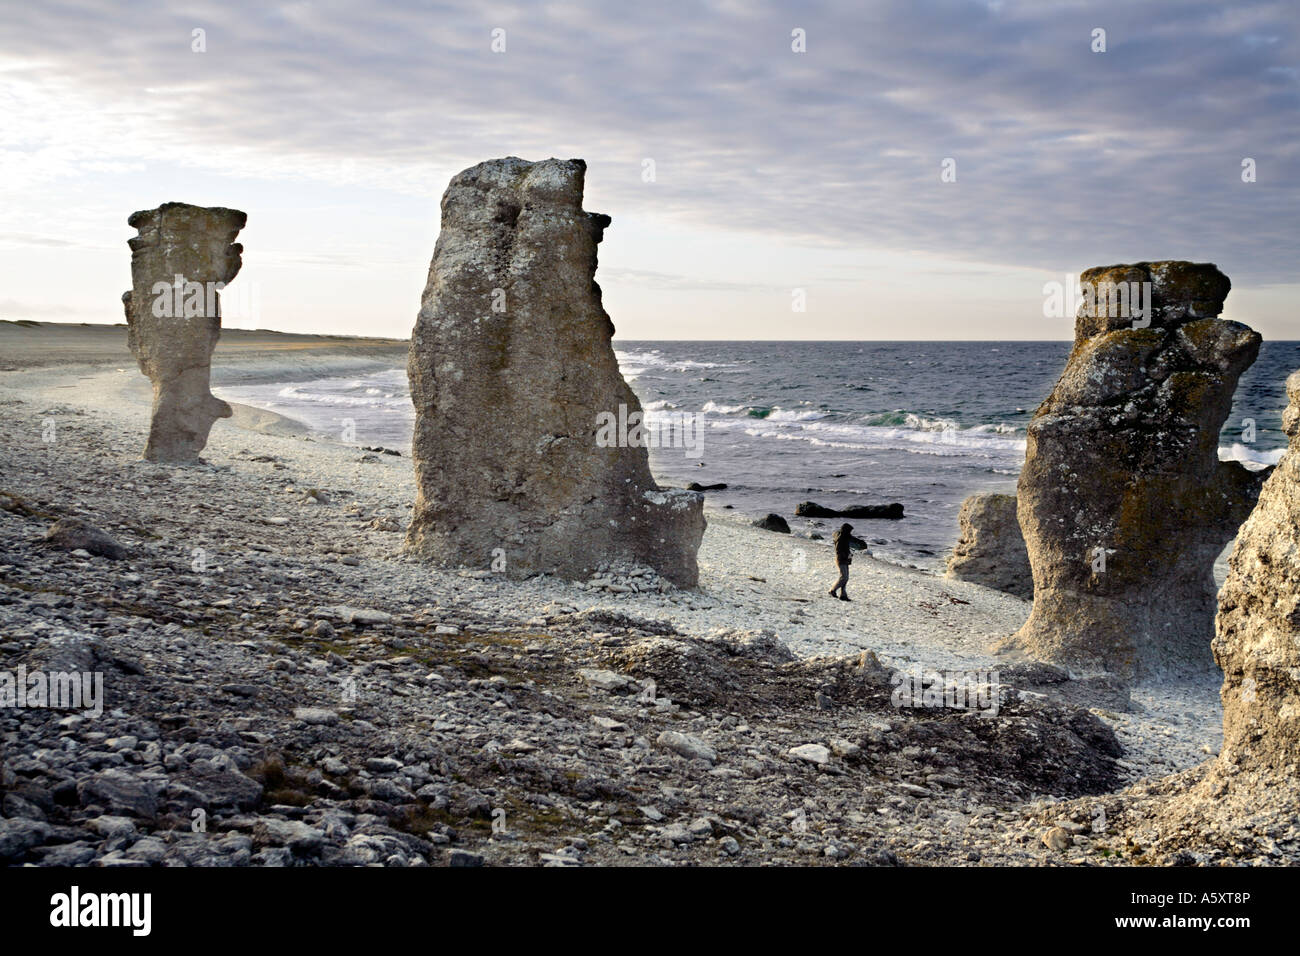 Raukar pietre Rauk un fenomeno geologico- calcare macinato dal mare e dai venti sulla costa di Stark di Gotland Svezia Foto Stock